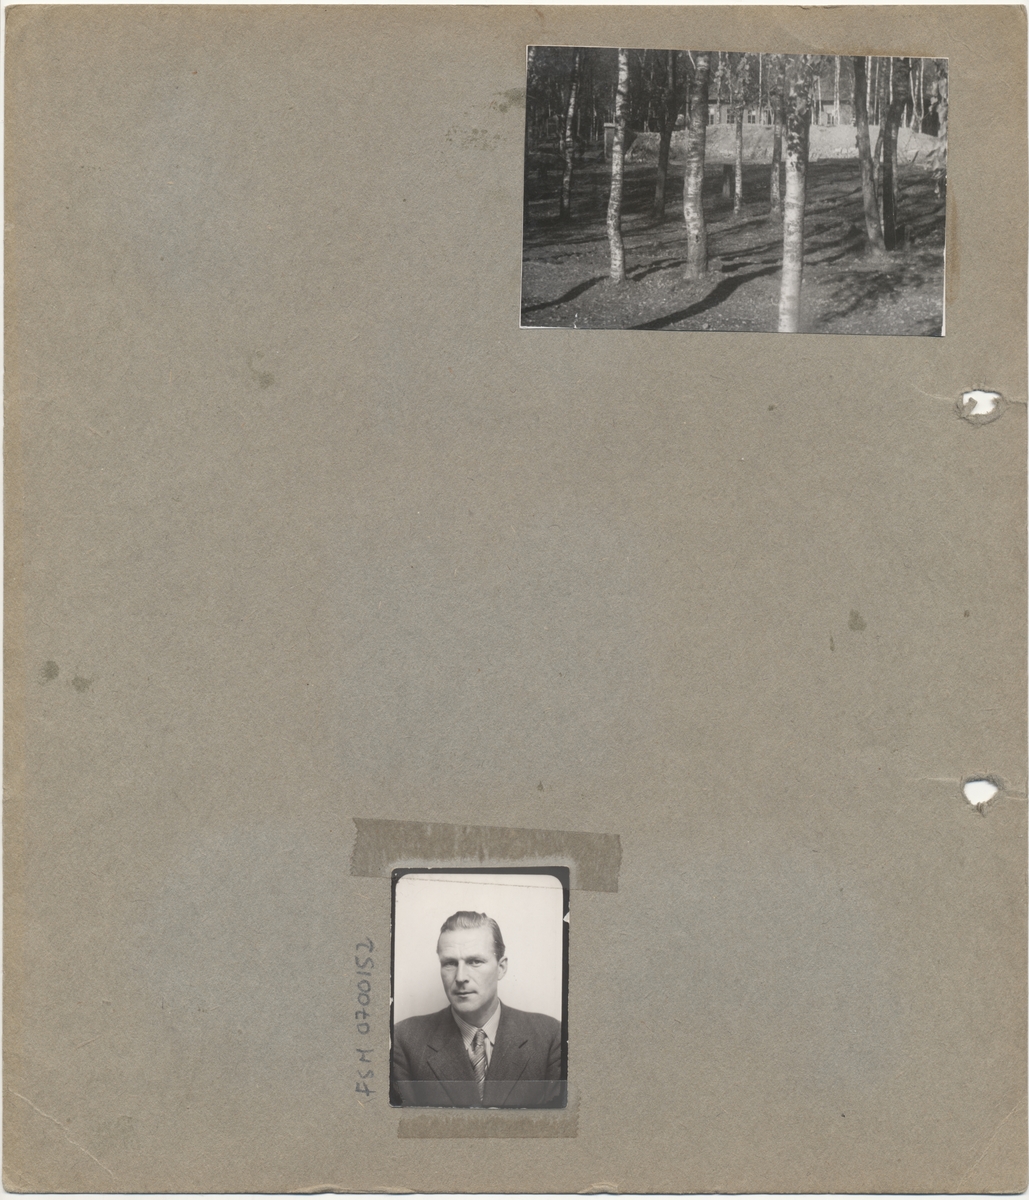 Albumblad (2 sider) med totalt 7 bevarte bilder. Fem av bildene (og et sjette som er borte) kan med sikkerhet knyttes til Falstad fangeleir under 2. verdenskrig.